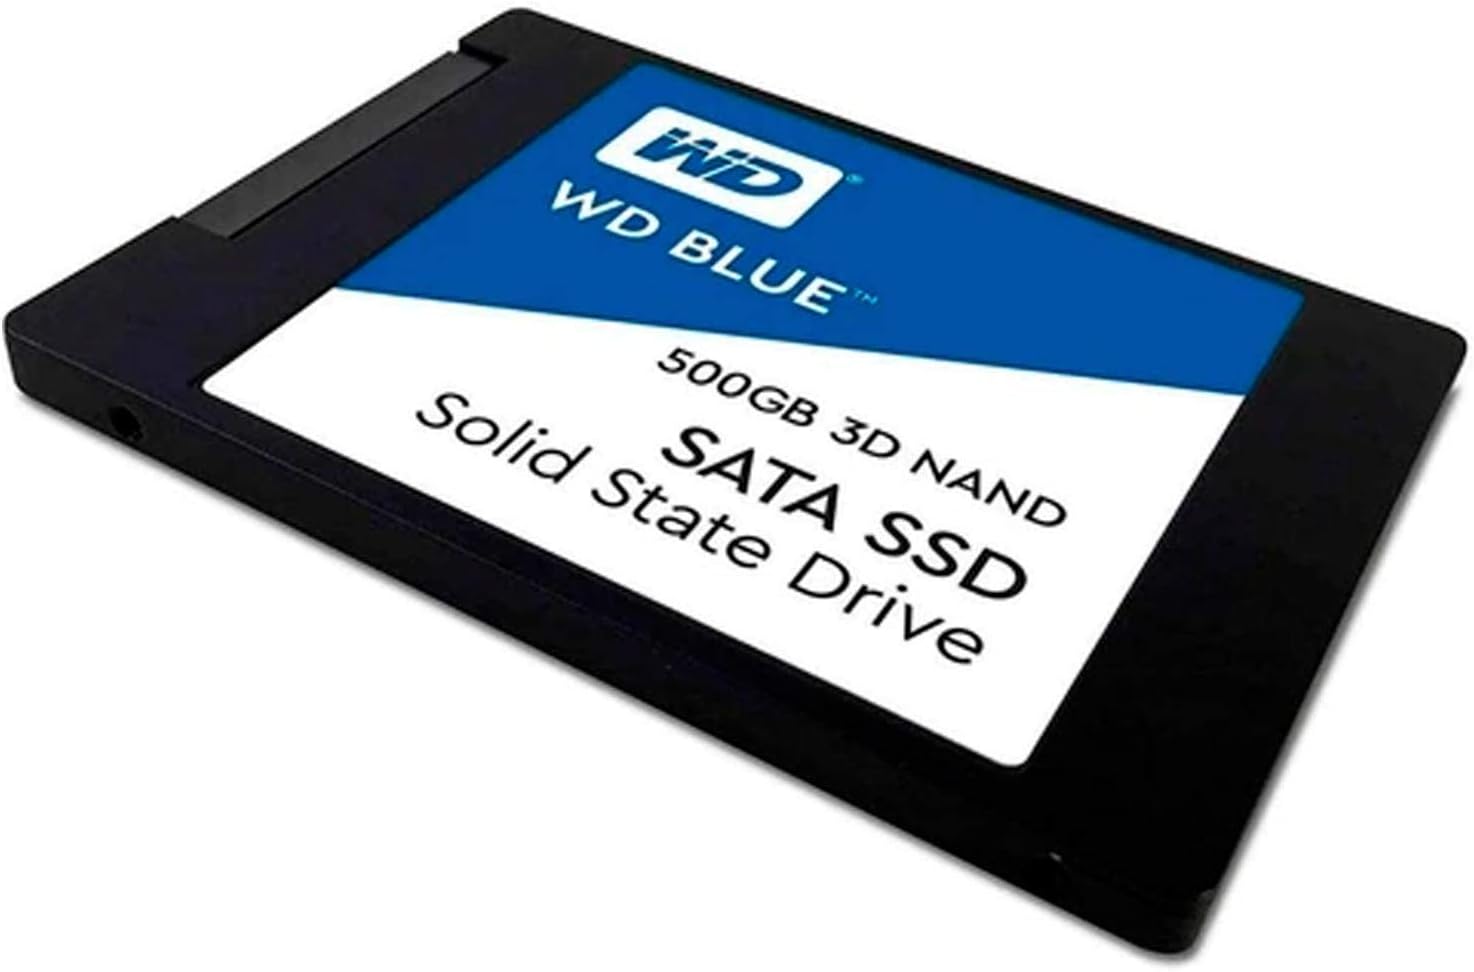 Western Digital 500GB WD Blue 3D NAND Internal PC SSD - SATA III 6 Gb/s, 2.5/7mm, Up to 560 MB/s - WDS500G2B0A, Solid State Drive